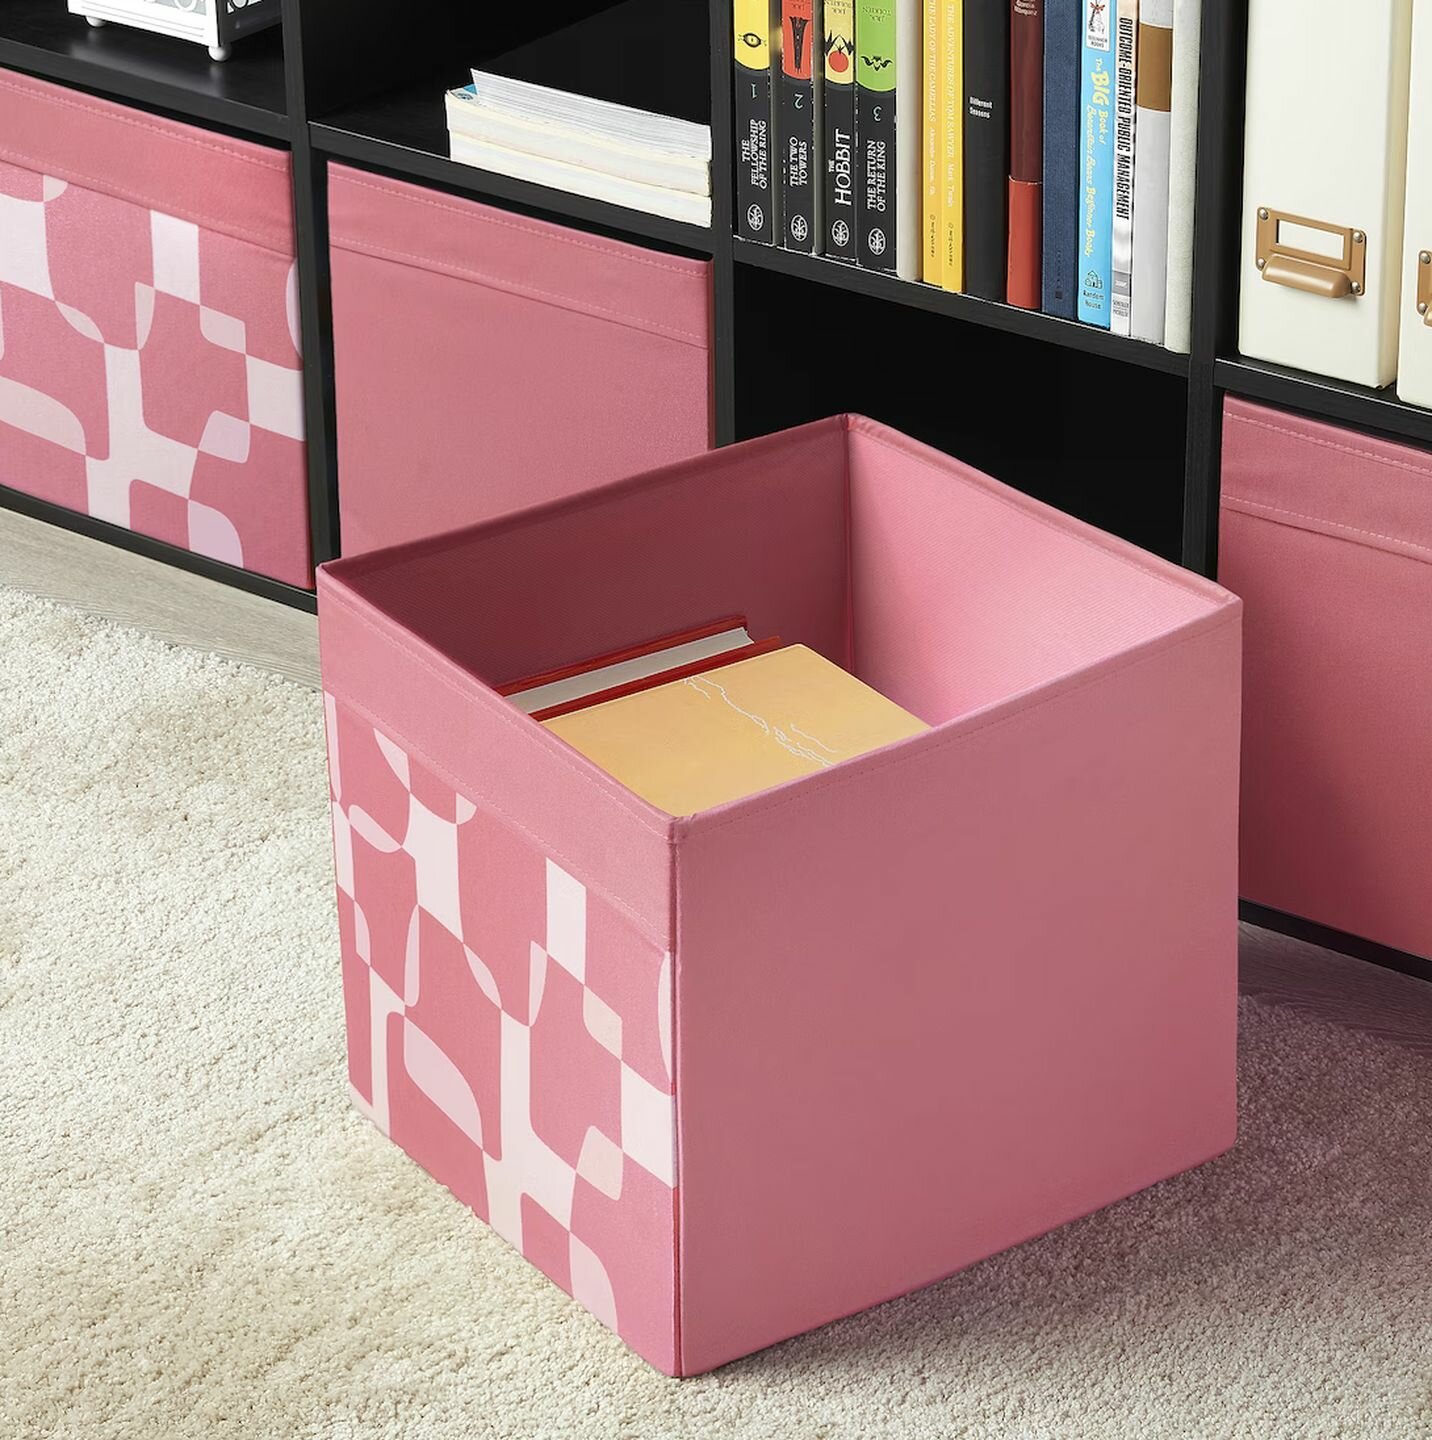 Дрёна DRÖNA коробка, 33x38x33 см, розовый /белый